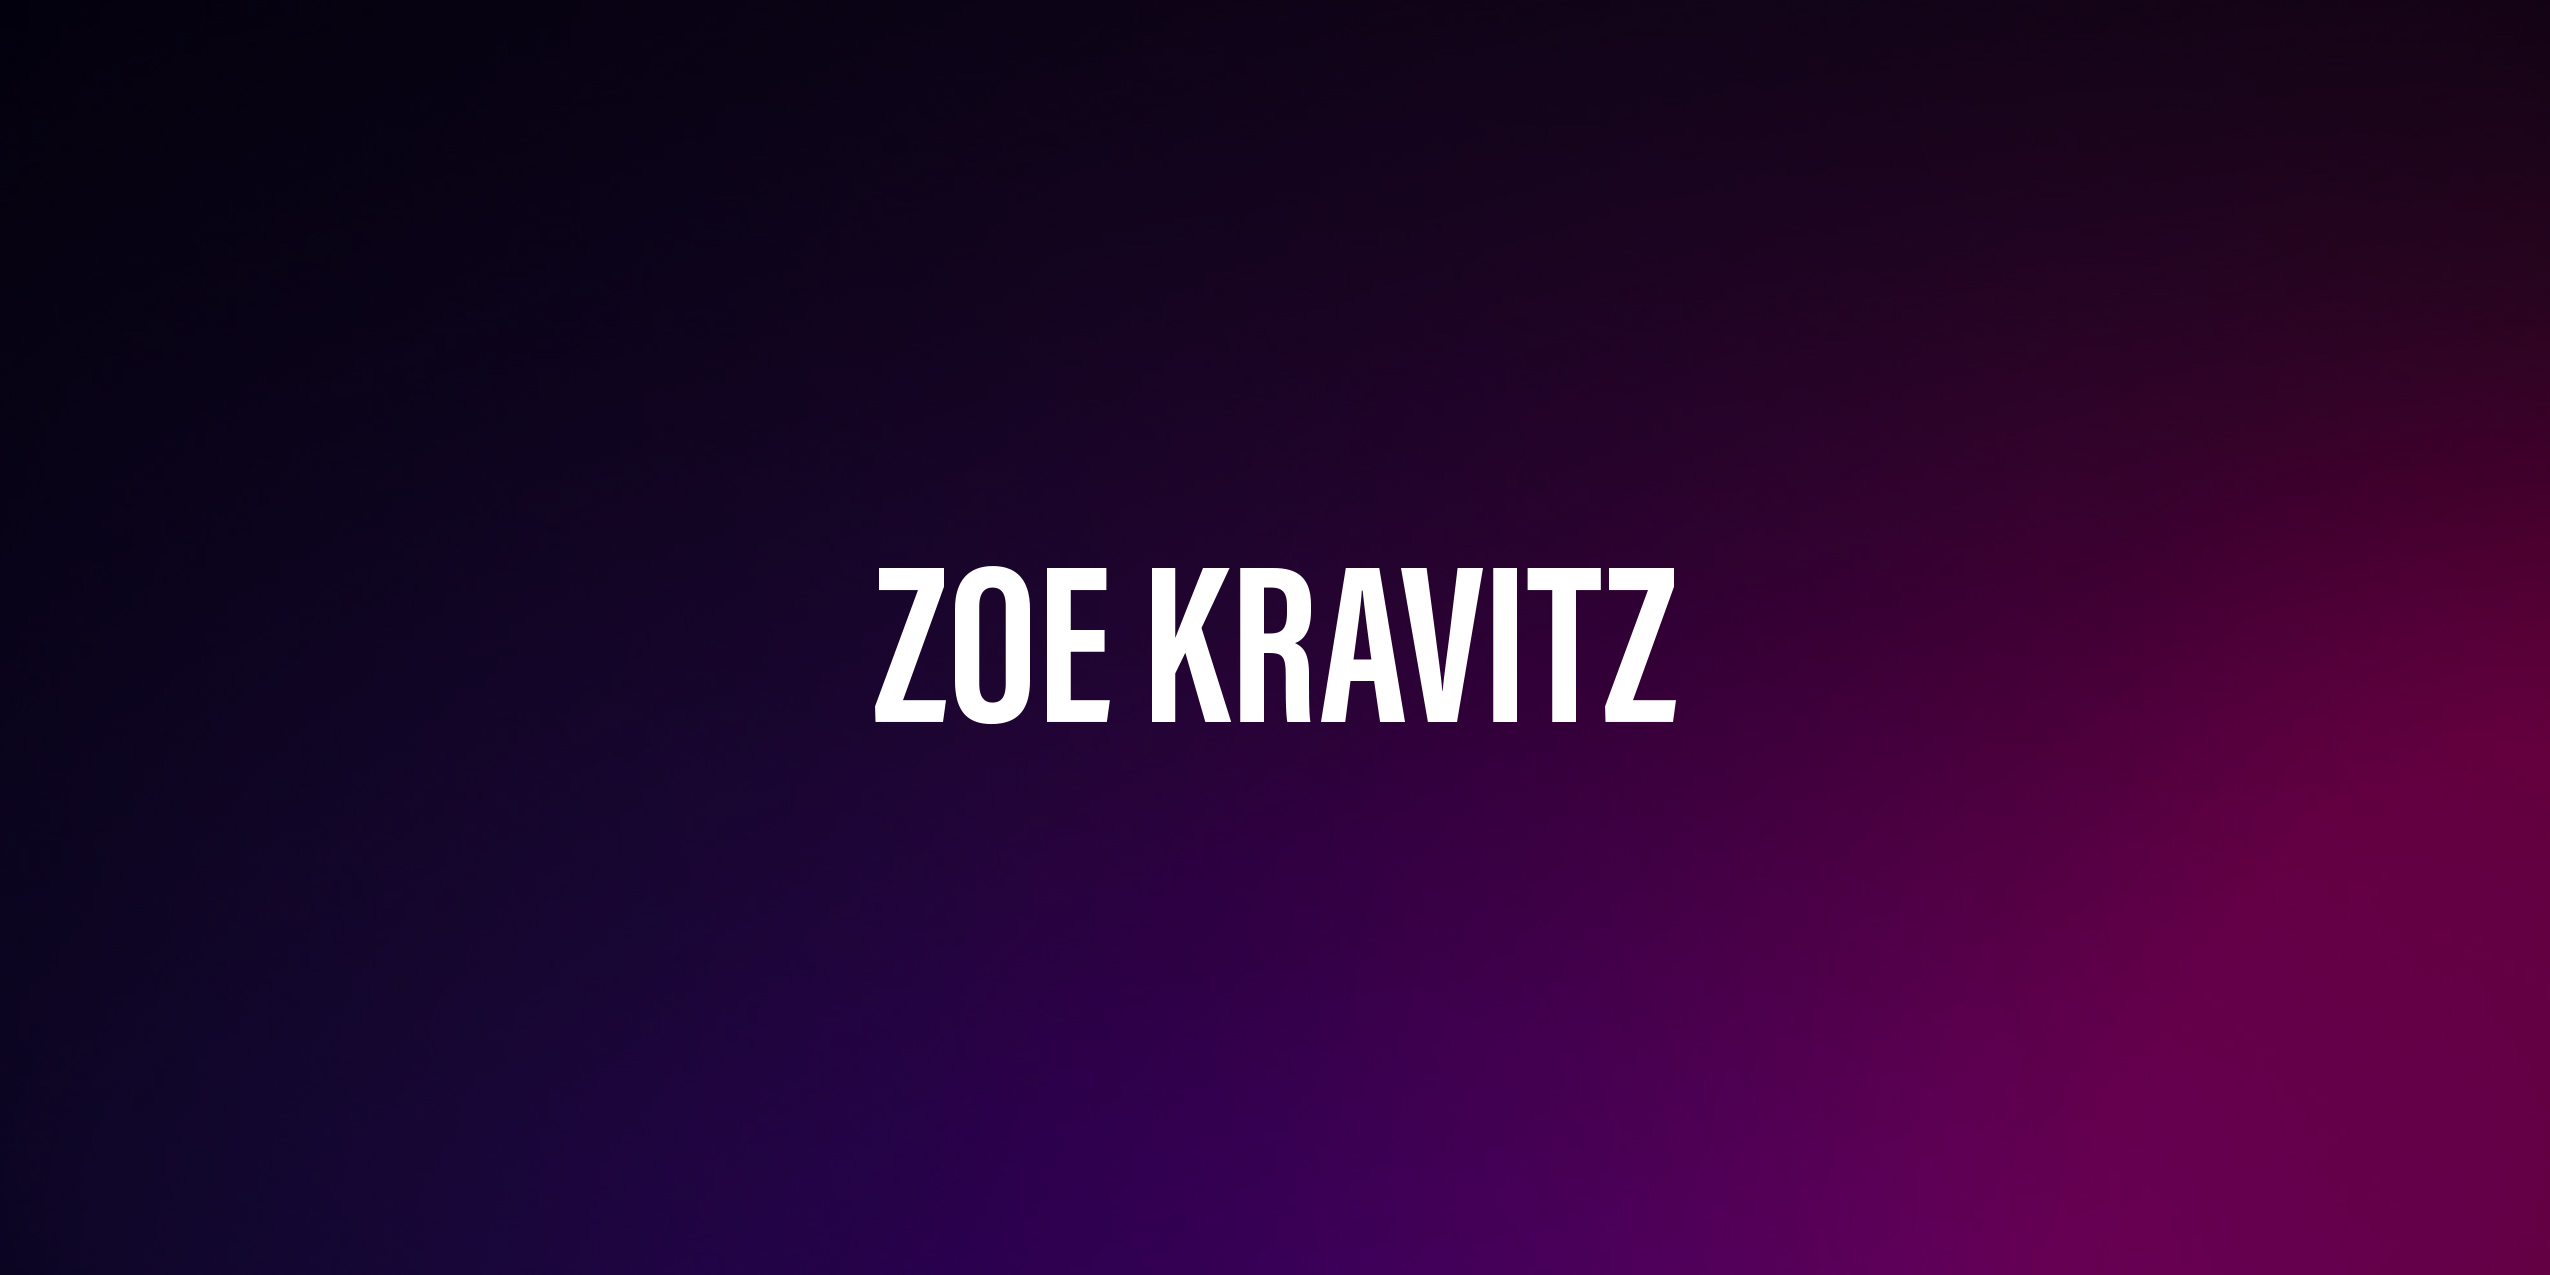 Zoë Kravitz – życiorys i filmografia